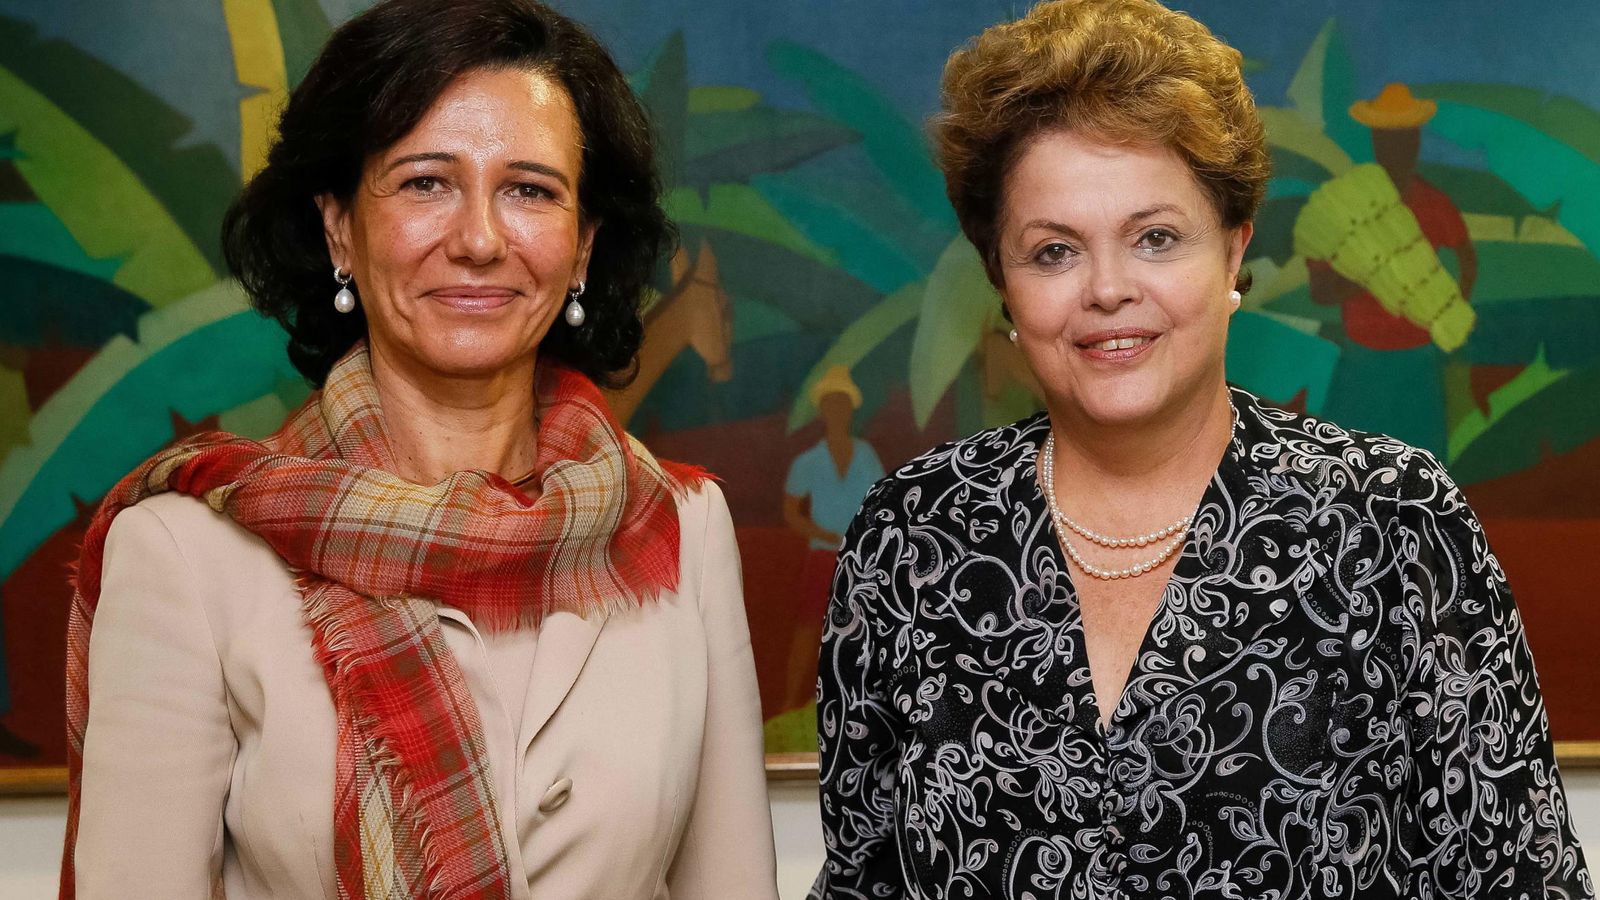 Foto: Ana Botín, presidenta del Banco Santander (i) junto a Dilma Rousseff, presidenta de Brasil (d) en una imagen de archivo. (EFE)